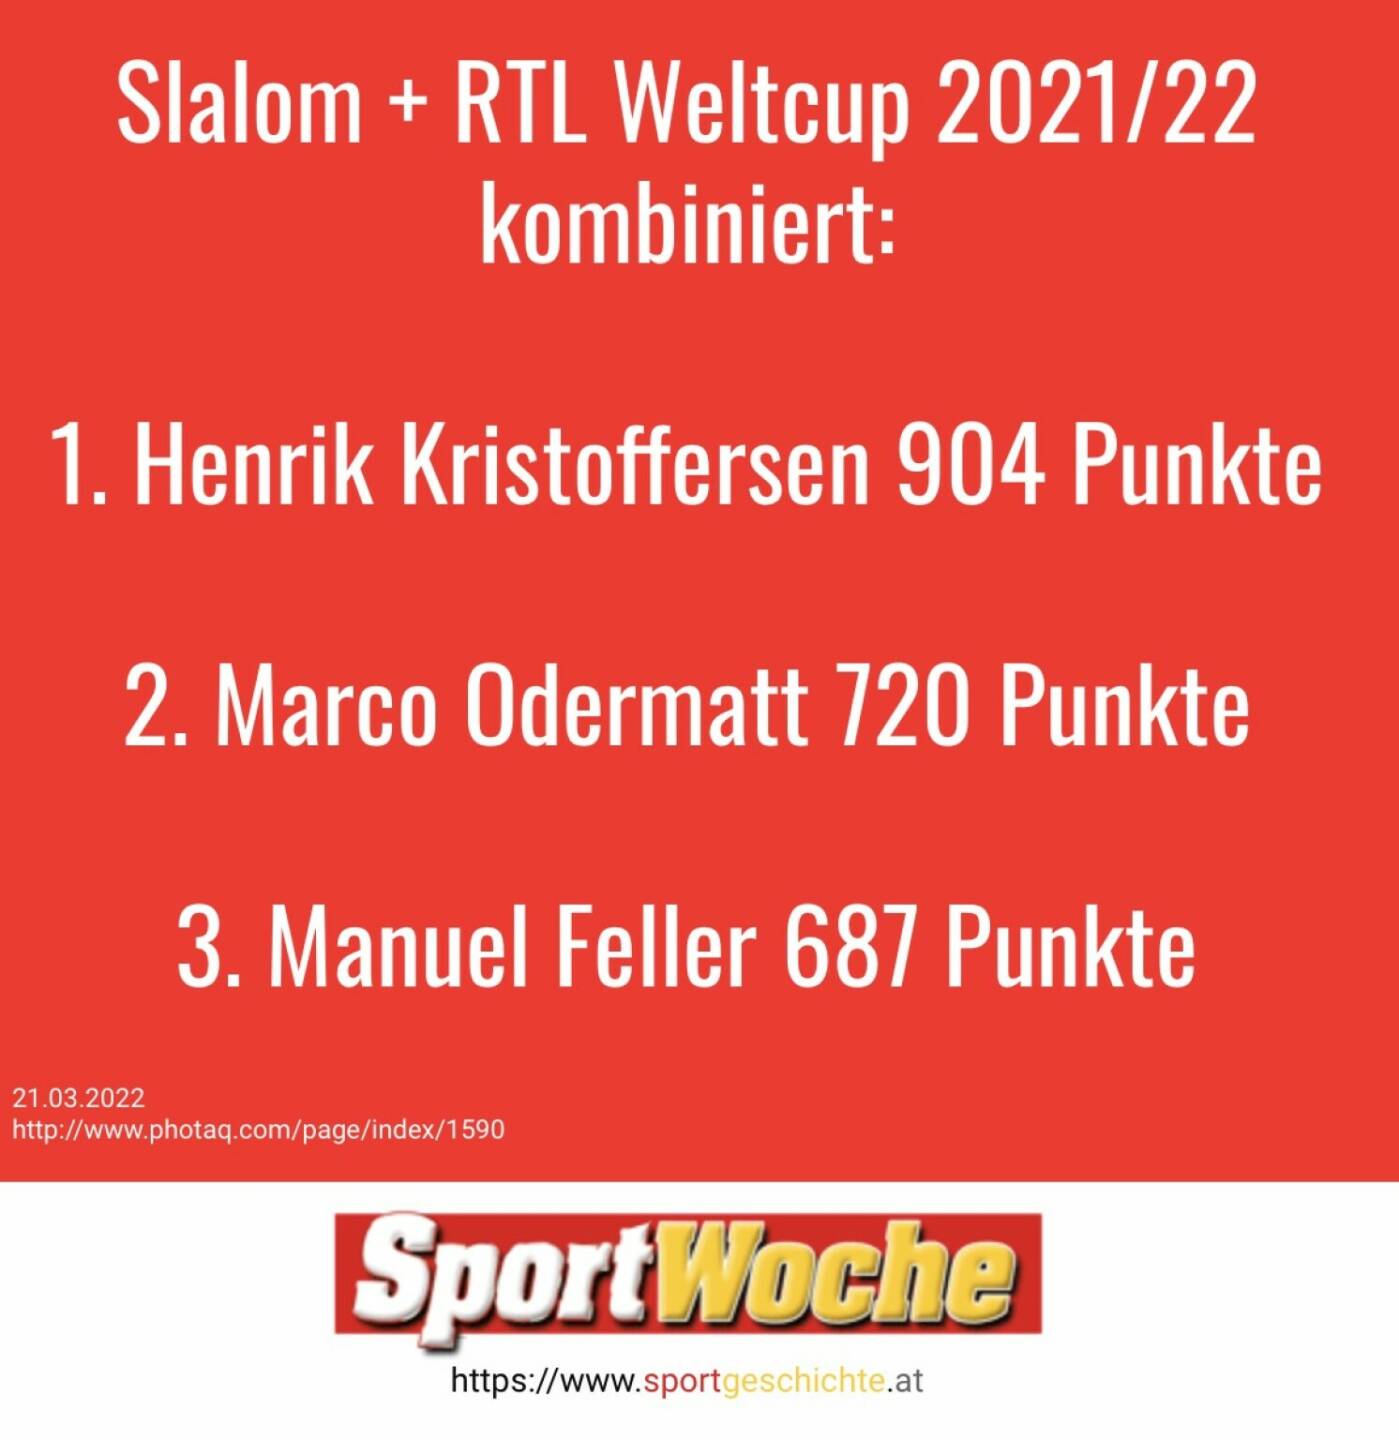 #slalom  + #riesentorlauf  #weltcup  2021/22 kombiniert: 1. @h_kristoffersen  904 Punkte , 2. @marcoodermatt  720 Punkte, 3. @manuel.feller.official 687 Punkte #oesv 